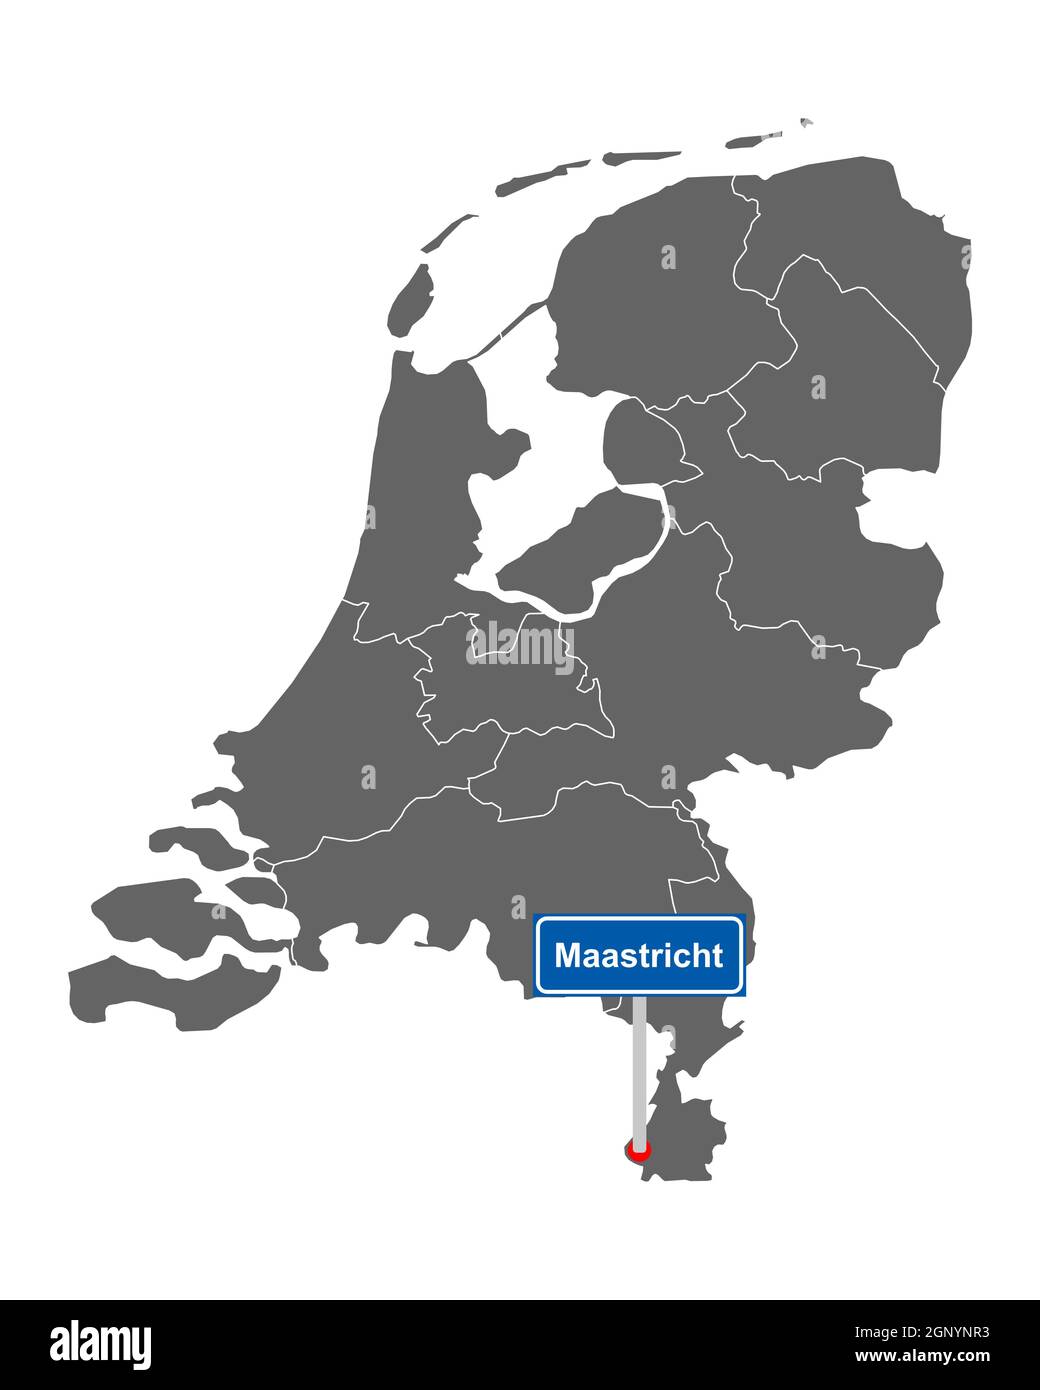 Landkarte der Niederlande mit Orstsschild Maastricht Stock Photo